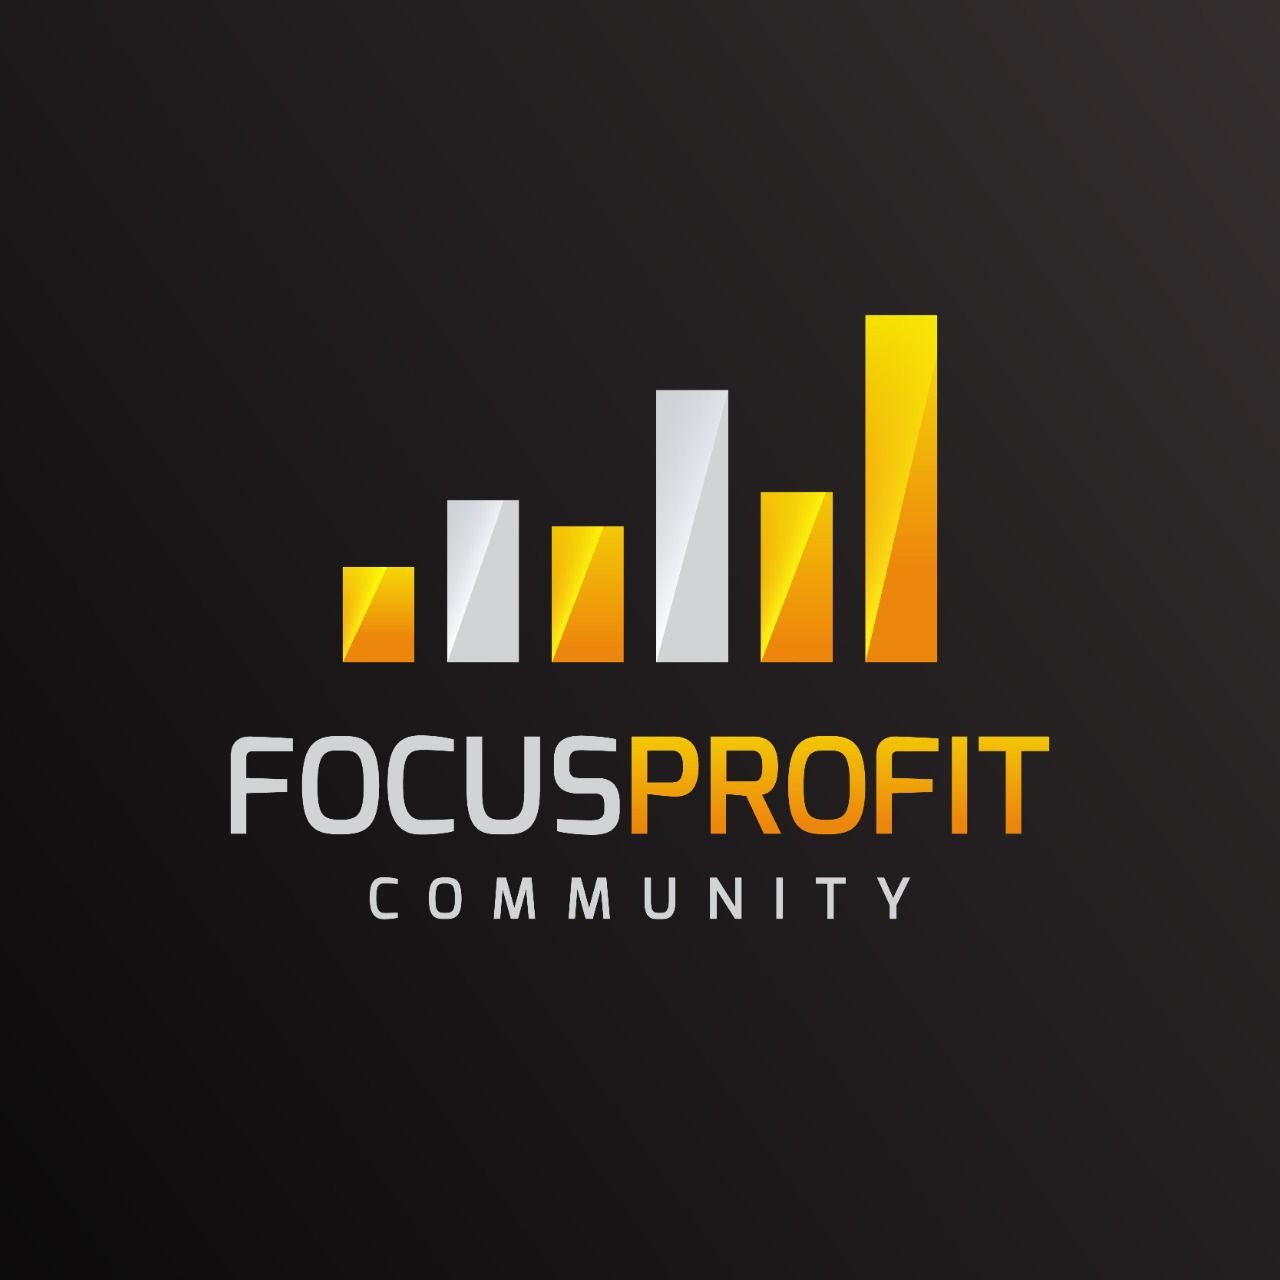 Focus Profit Community